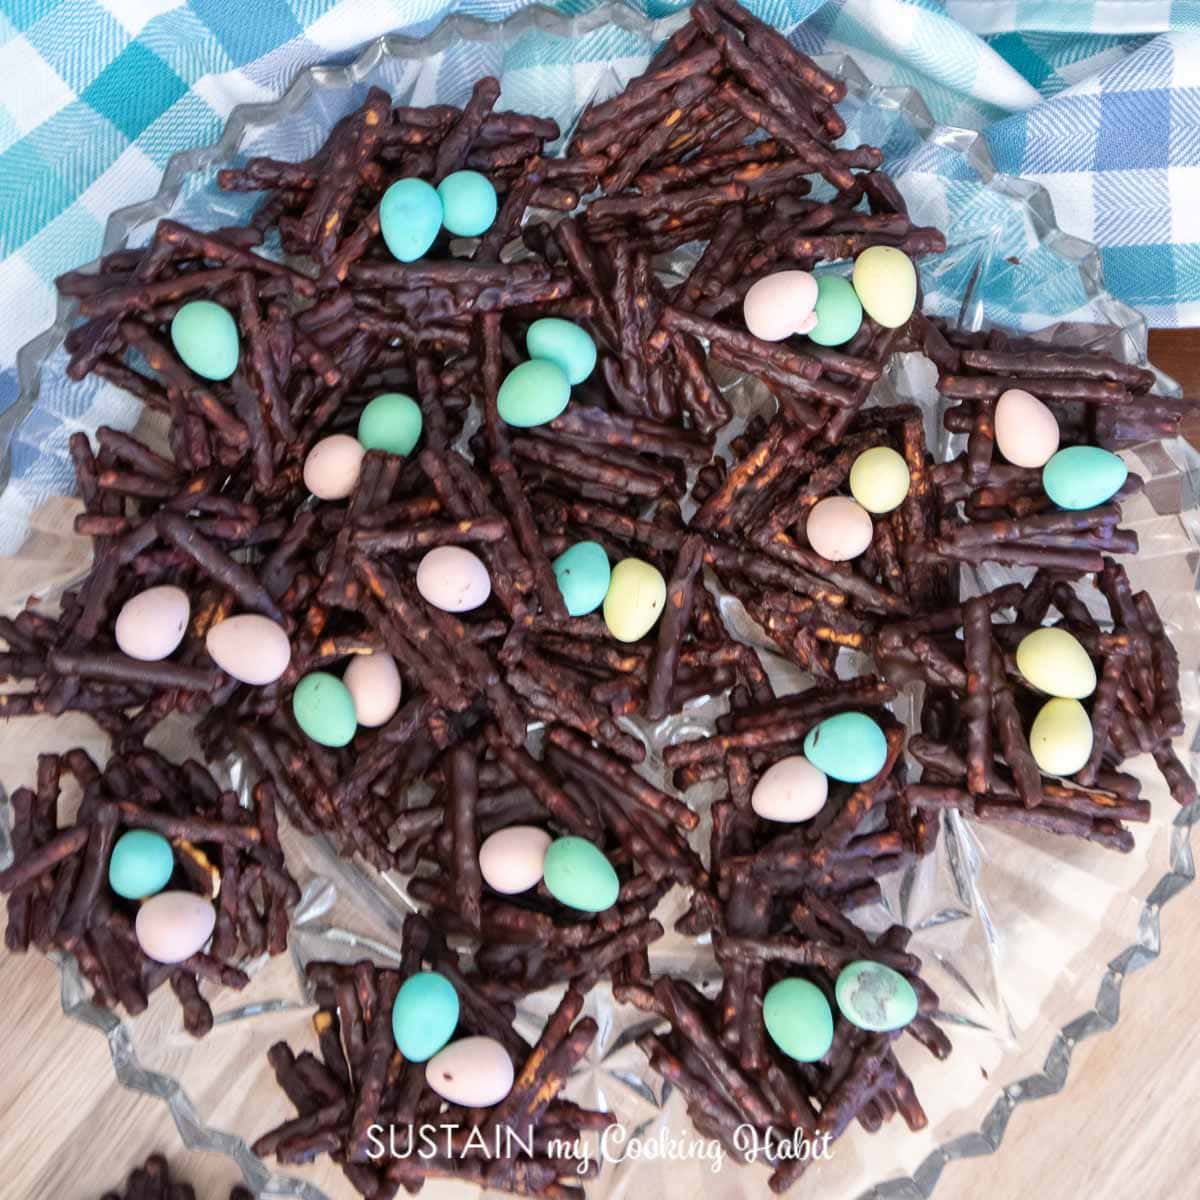 platter full of Easter nest cookies